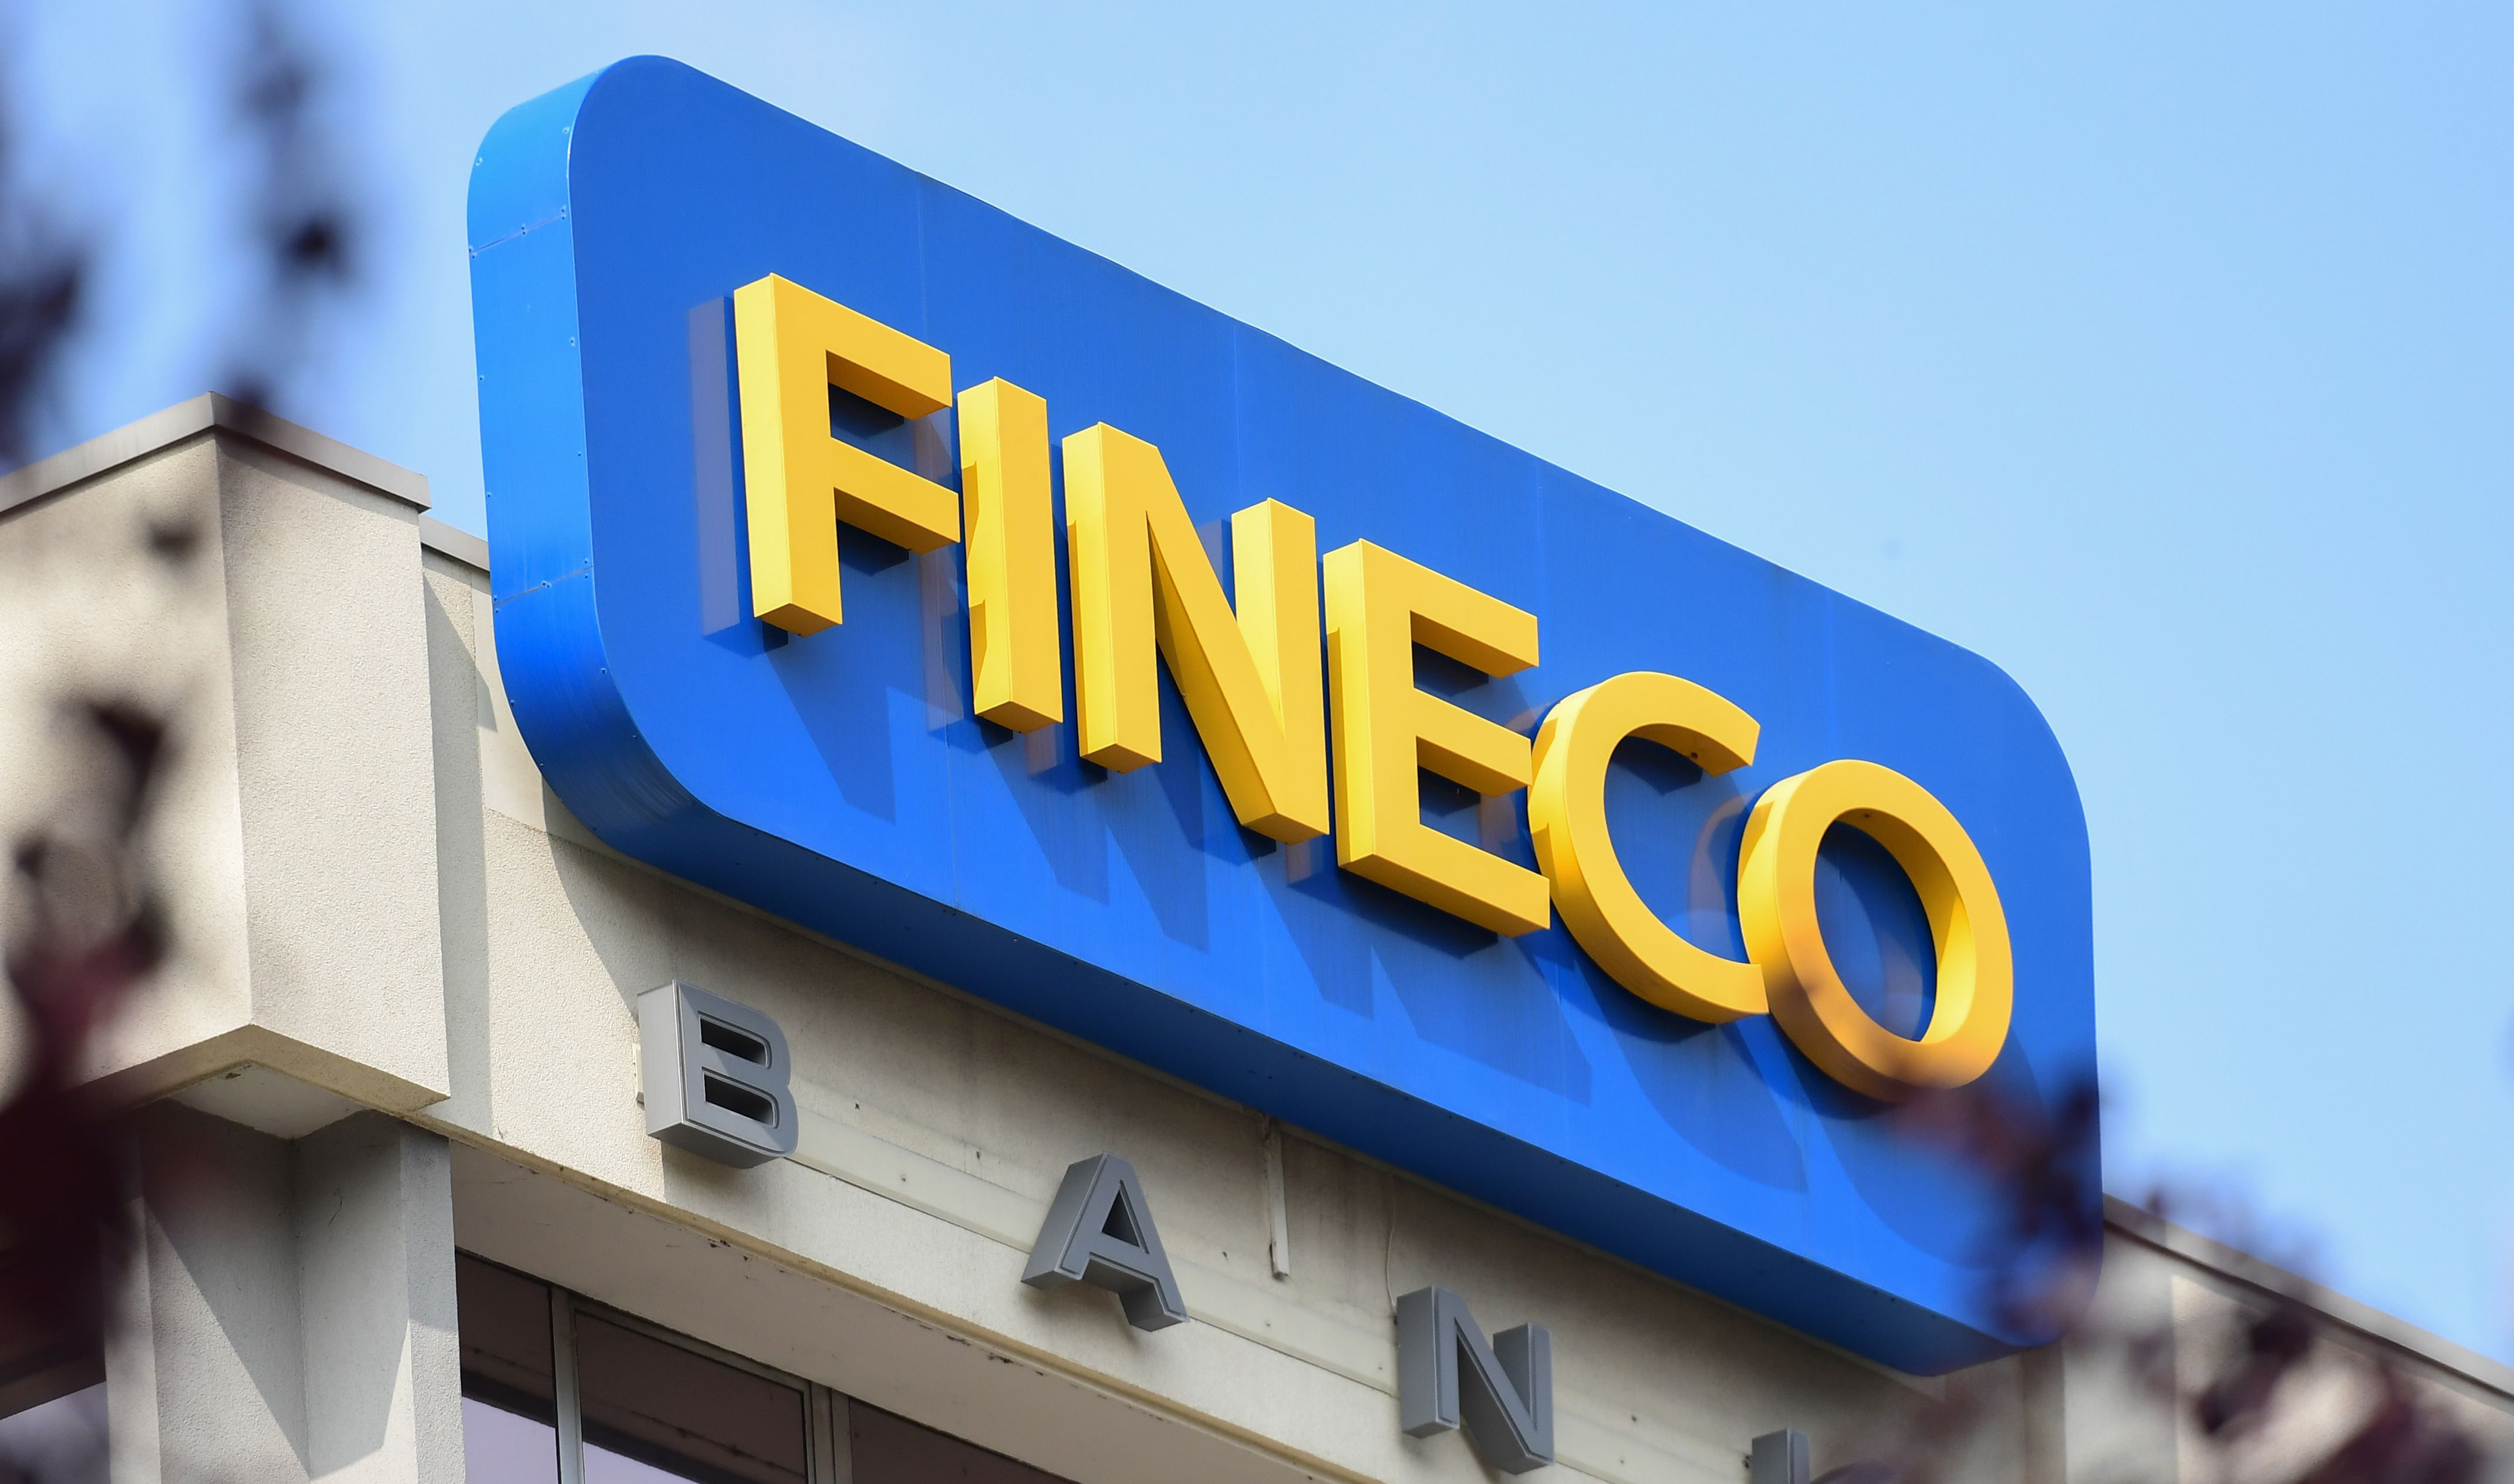 financialounge -  benessere aziendale finanza Fineco smart working